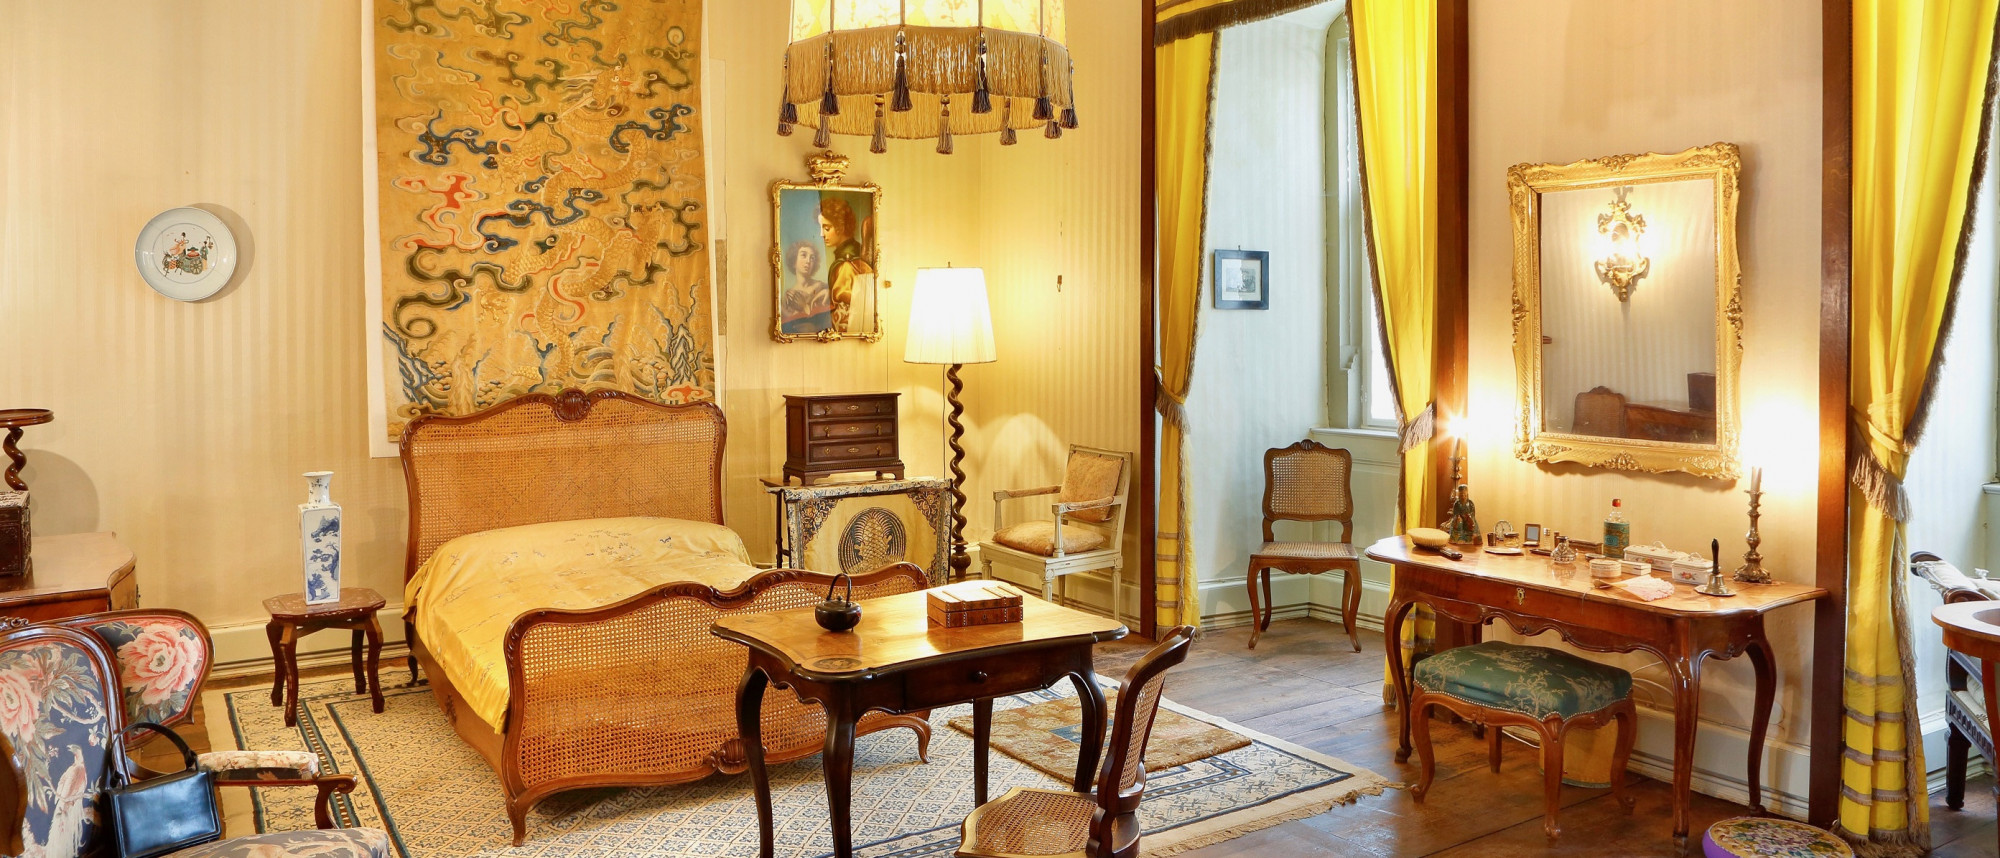 Raumansicht des Schlafzimmers von Carola Gräfin von Luxburg. Die Einrichtung ist in Gelbtönen gehalten.